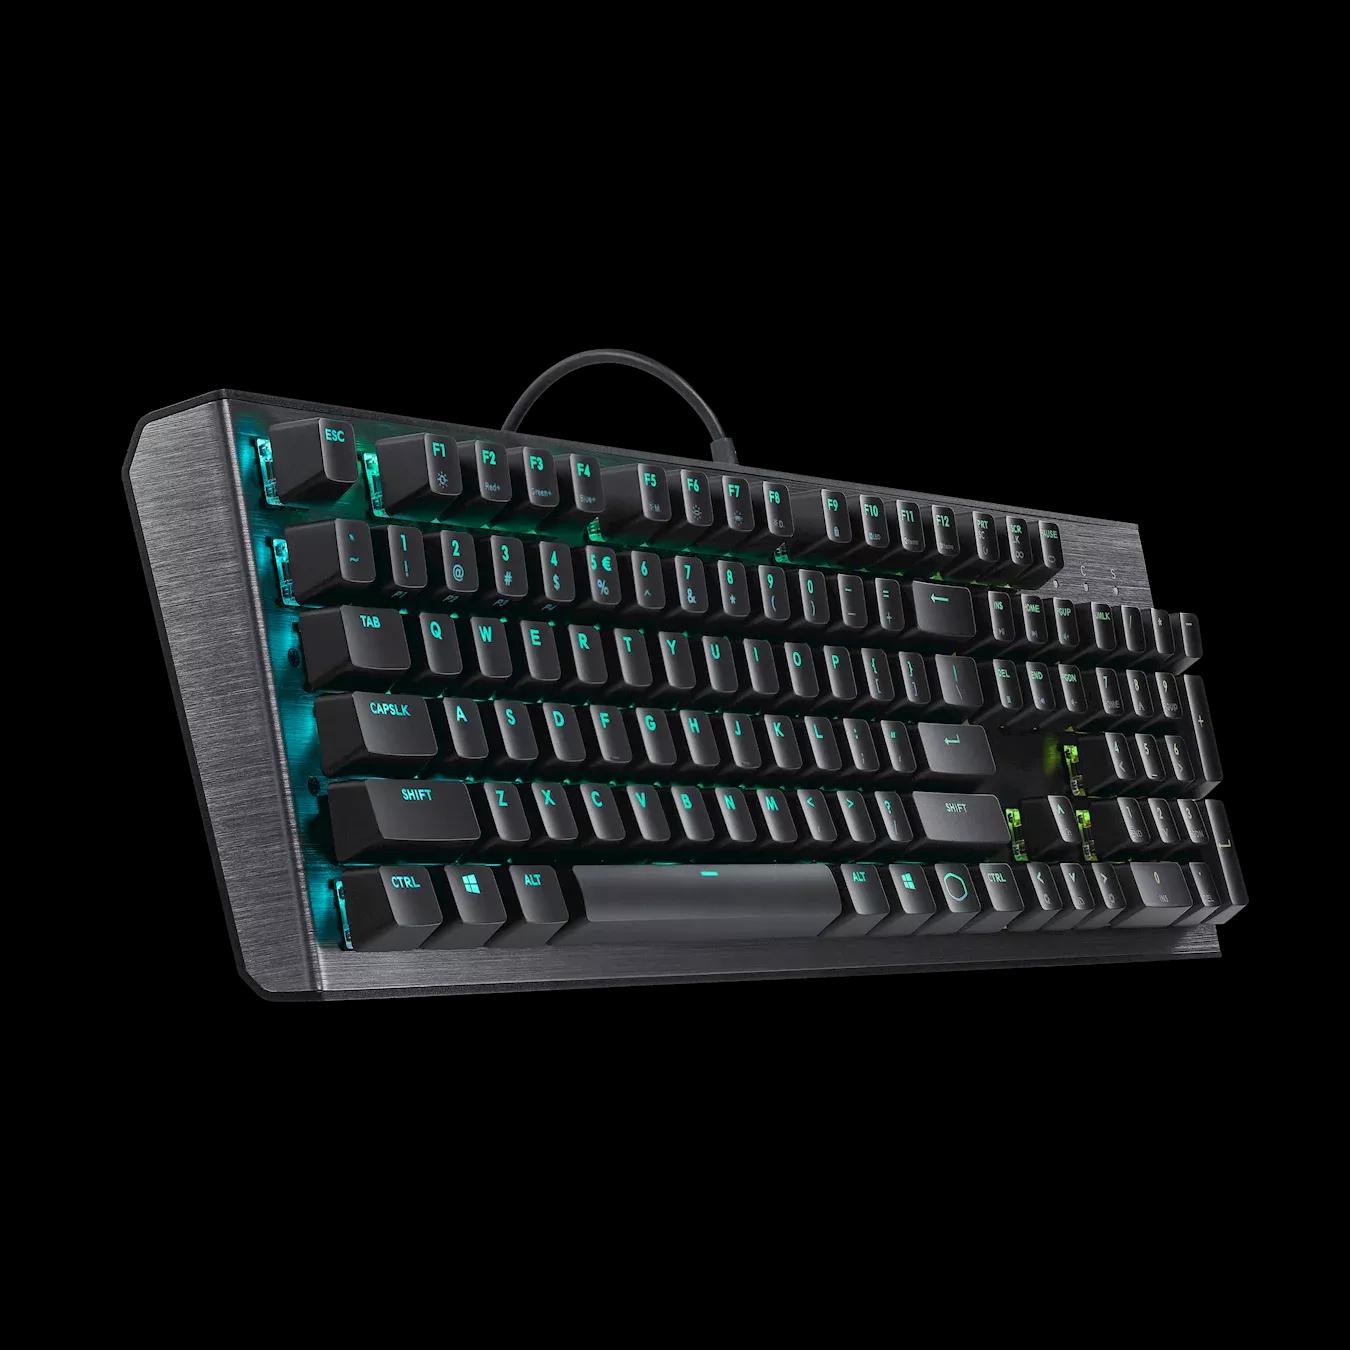 Cooler Master CK550 Full RGB Mechanical Gaming Keyboard